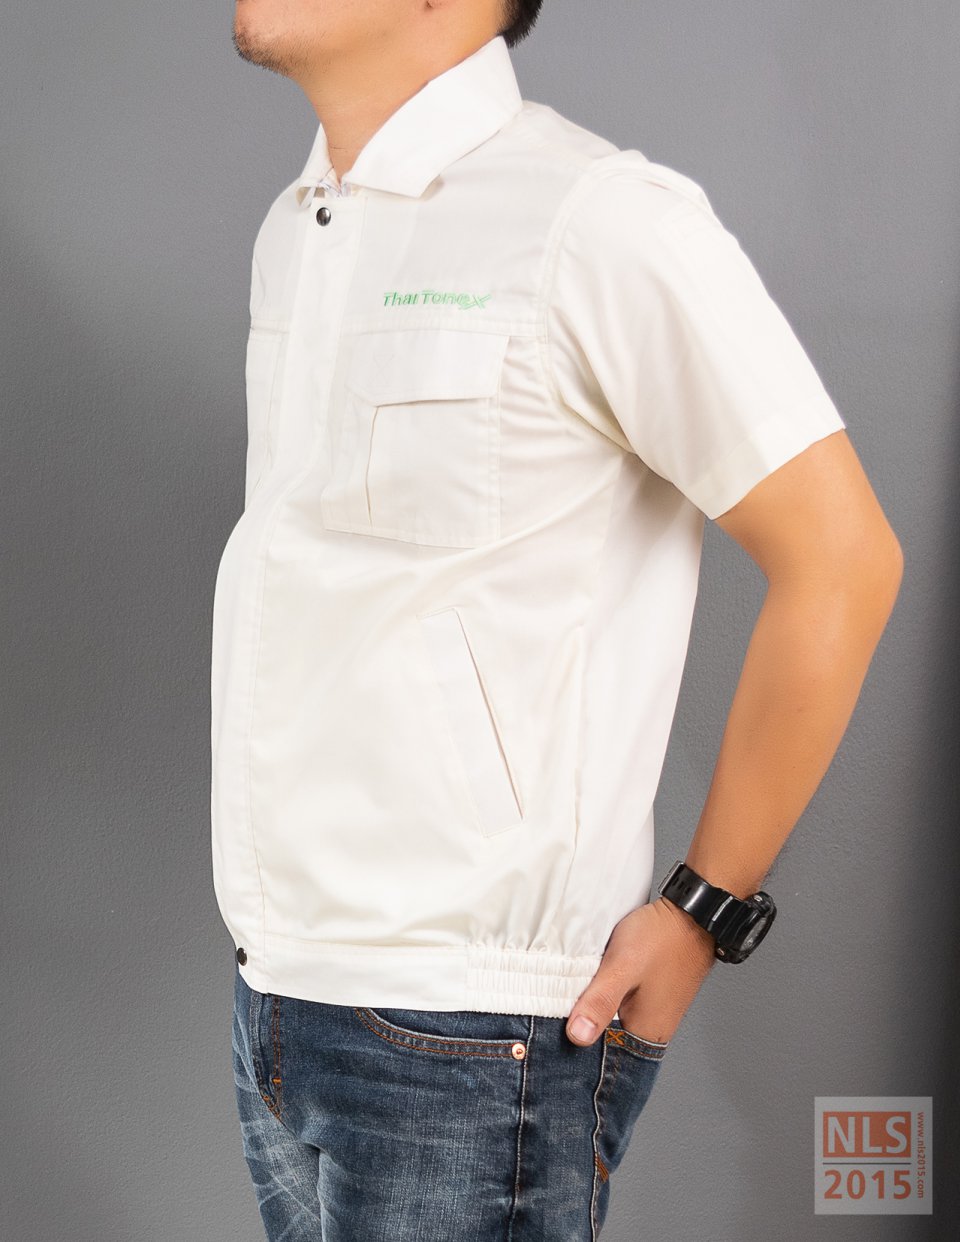 แบบชุดยูนิฟอร์มพนักงาน เสื้อแขนสั้นบริษัท Thai Tonex / นลินสิริ รับตัดชุดยูนิฟอร์มพนักงานรูปที่ 